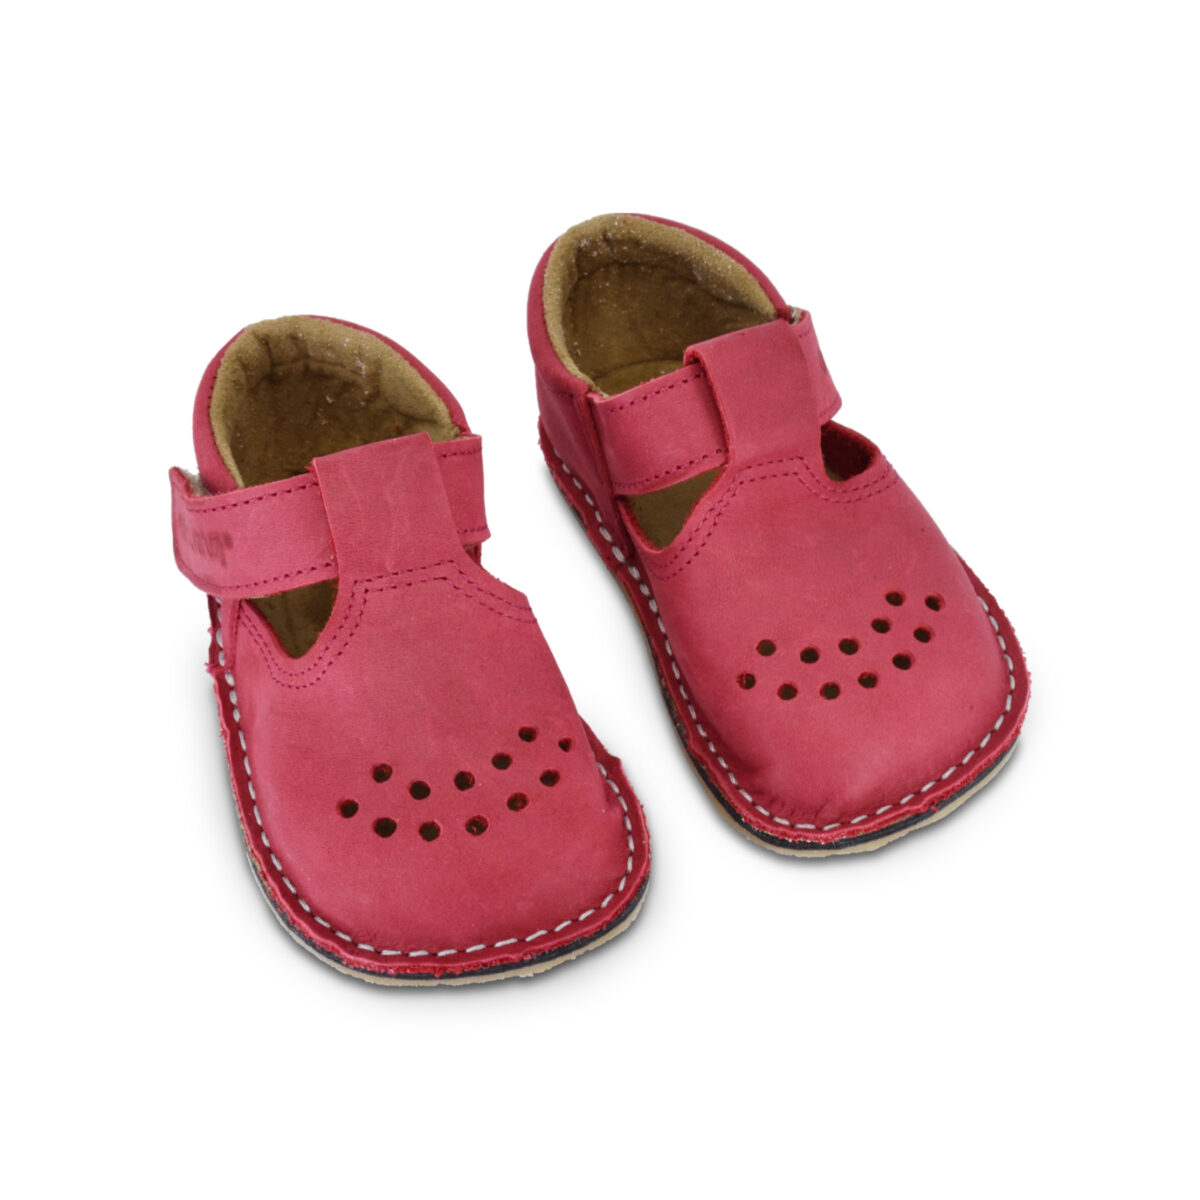 OmaKing nahast barefoot sandaalid Lusti- punane Laste barefoot jalatsid - HellyK - Kvaliteetsed lasteriided, villariided, barefoot jalatsid